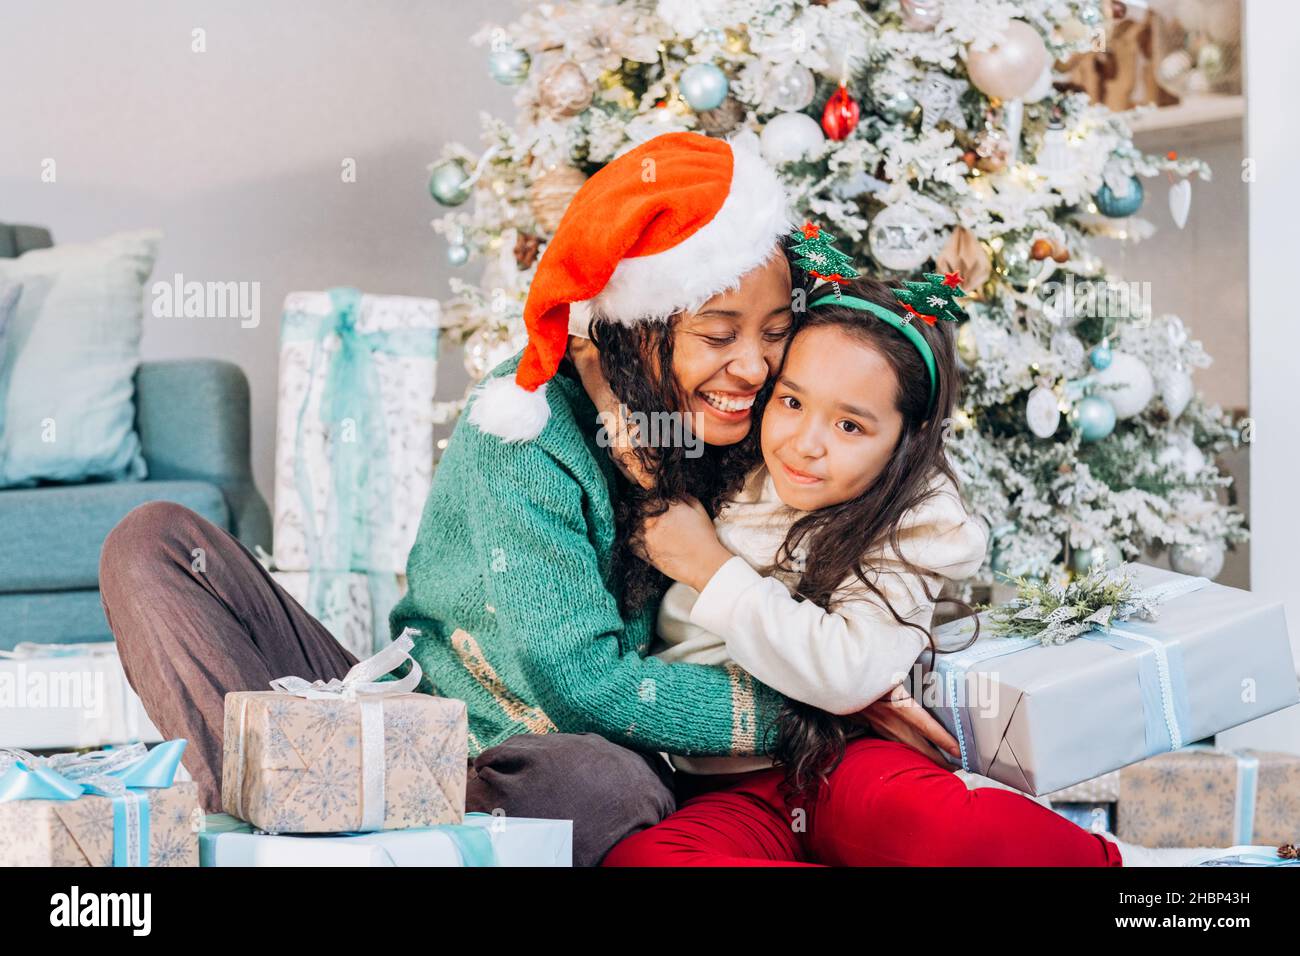 La madre afroamericana y la hija morena de pelo largo en sombreros festivos abrazan fuertemente sonriente sentado entre cajas de regalo por el árbol de Navidad Foto de stock